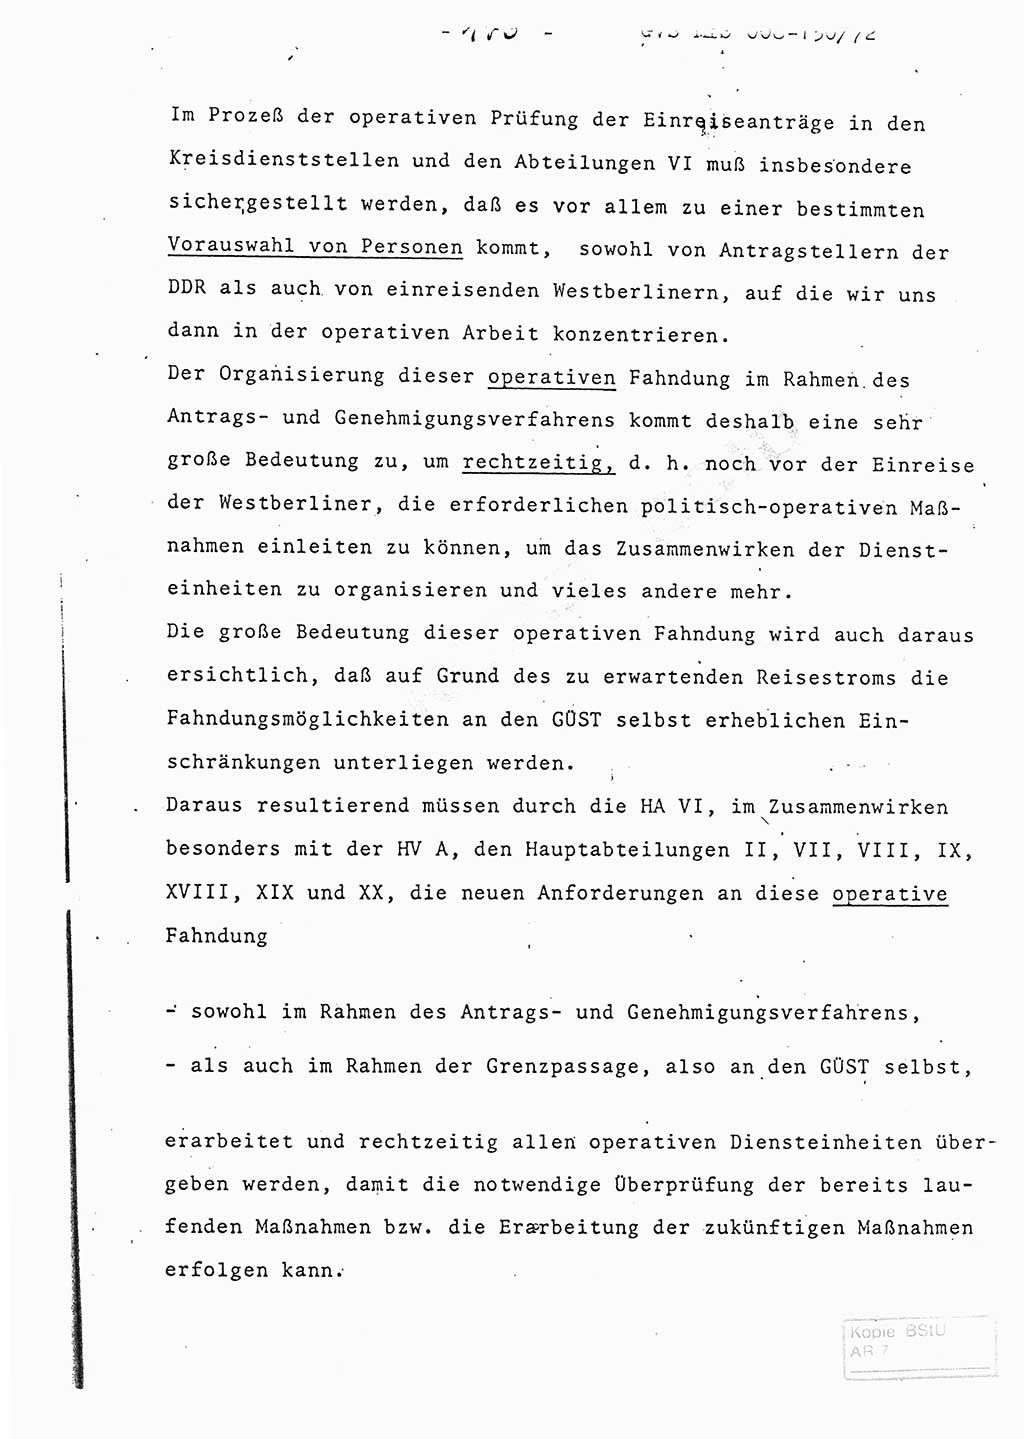 Referat (Entwurf) des Genossen Minister (Generaloberst Erich Mielke) auf der Dienstkonferenz 1972, Ministerium für Staatssicherheit (MfS) [Deutsche Demokratische Republik (DDR)], Der Minister, Geheime Verschlußsache (GVS) 008-150/72, Berlin 25.2.1972, Seite 176 (Ref. Entw. DK MfS DDR Min. GVS 008-150/72 1972, S. 176)